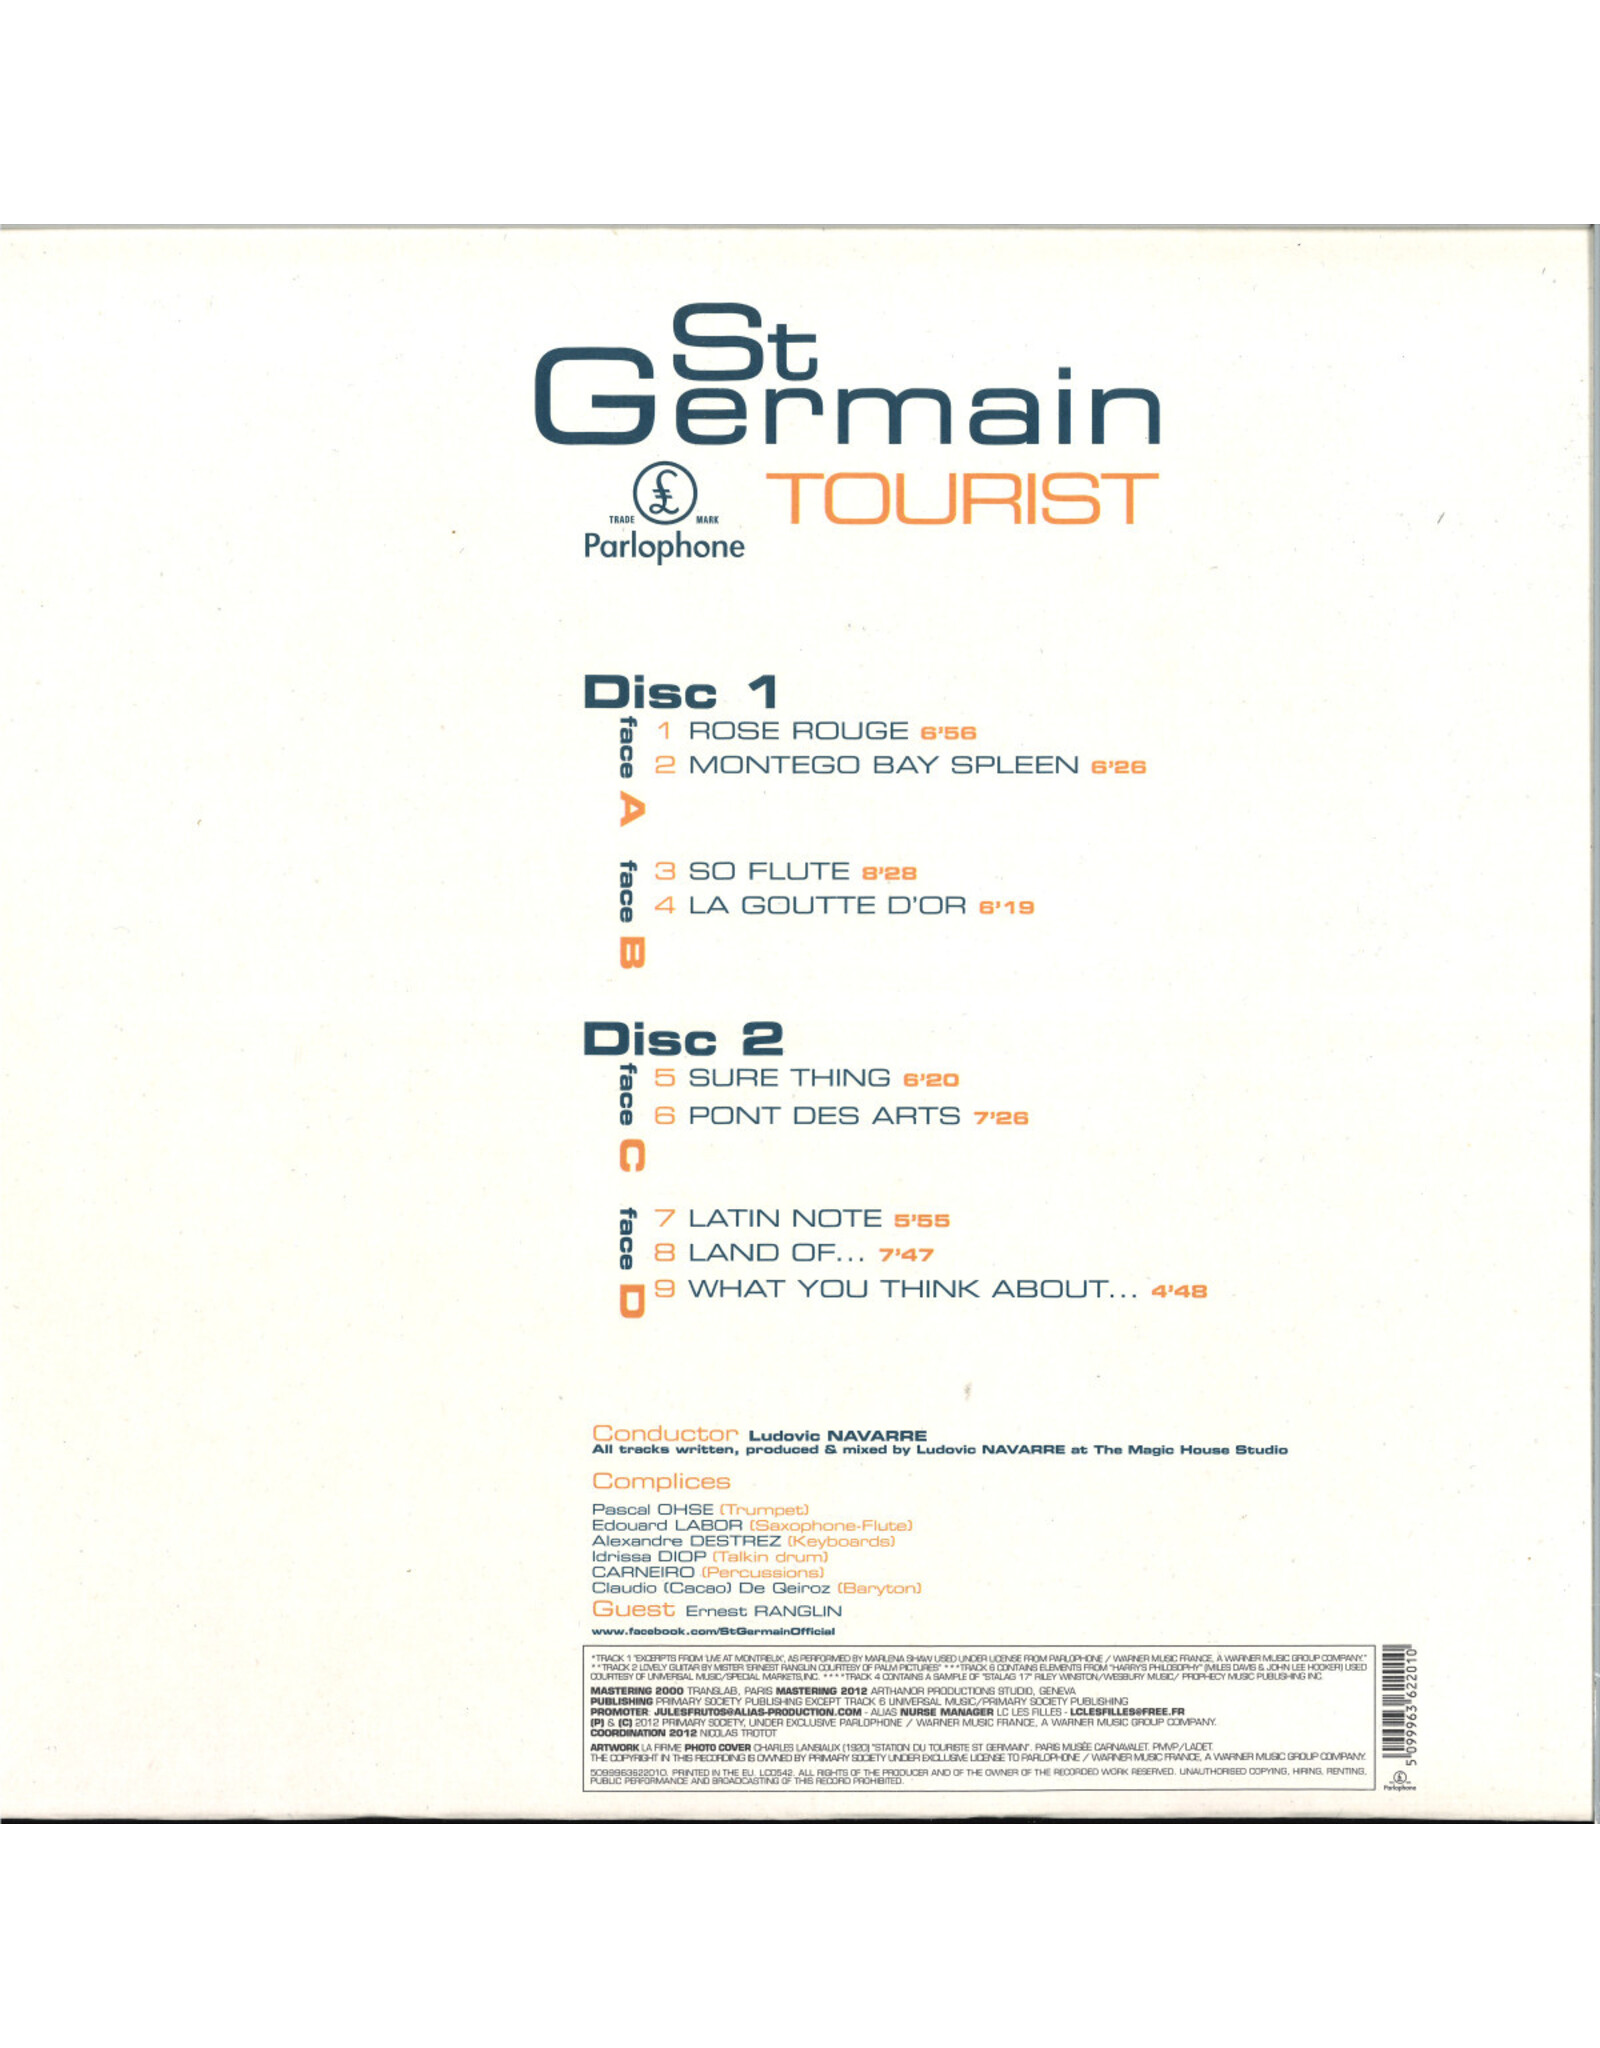 St Germain - Tourist (10th Anniversary)